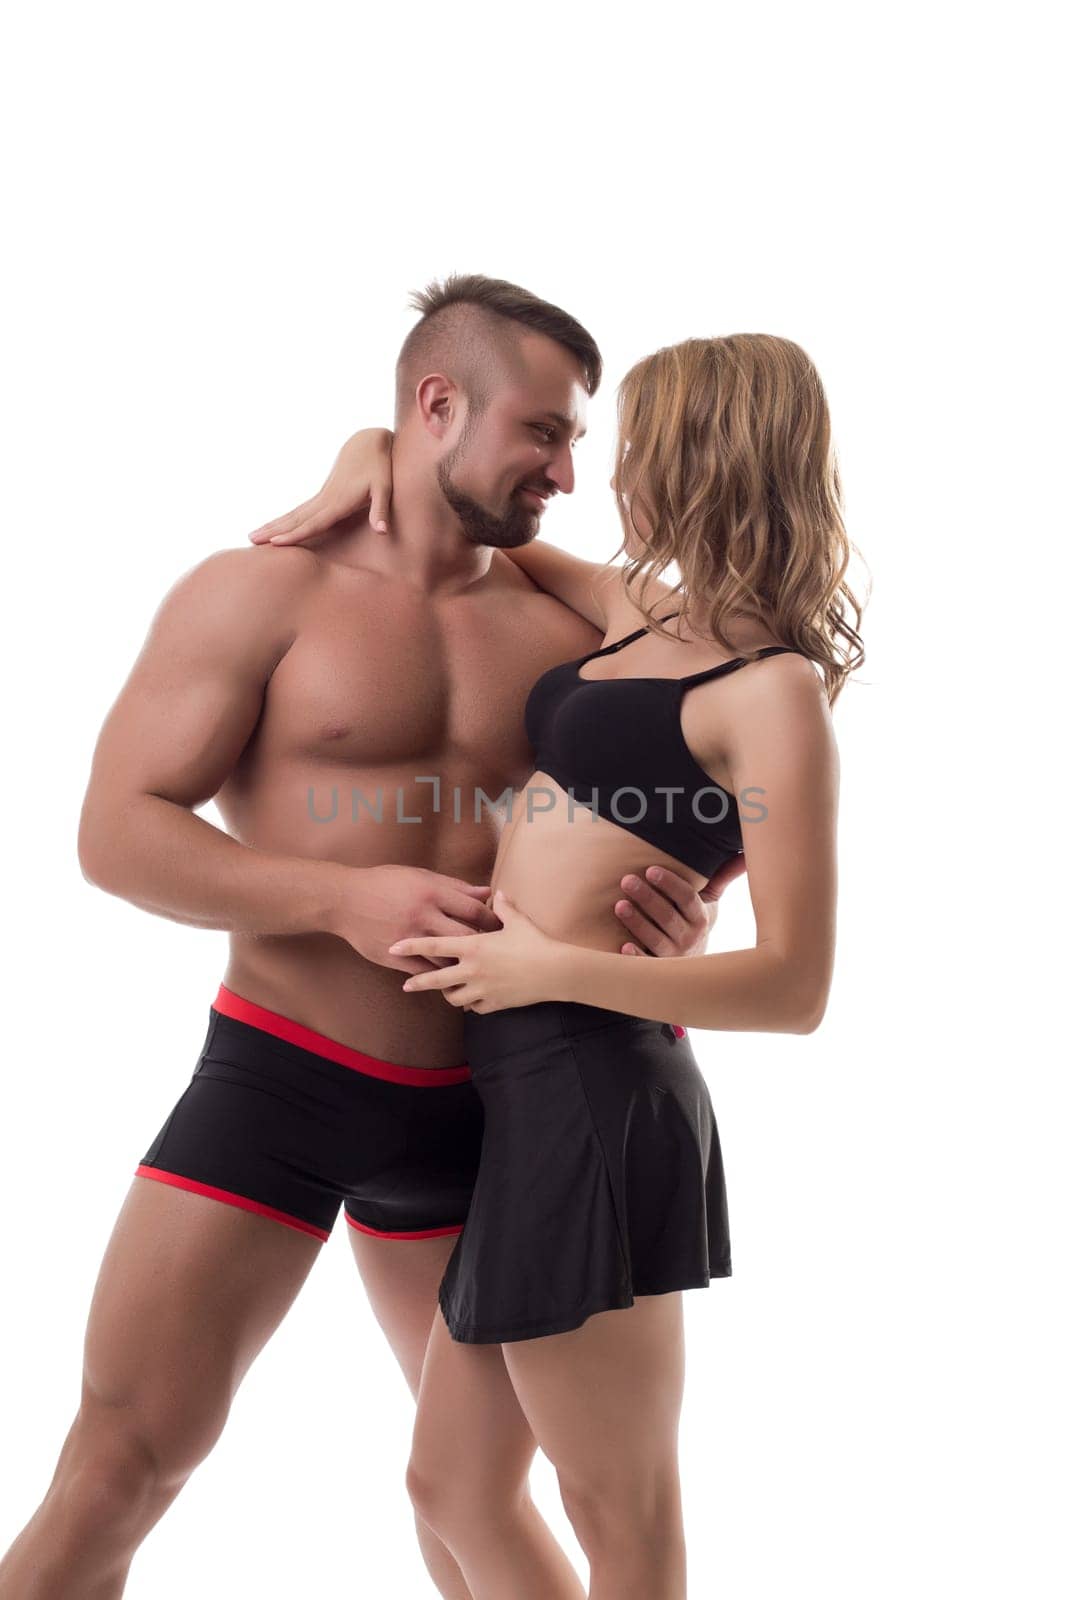 Studio photo of happy couple athletes. Healthy concept